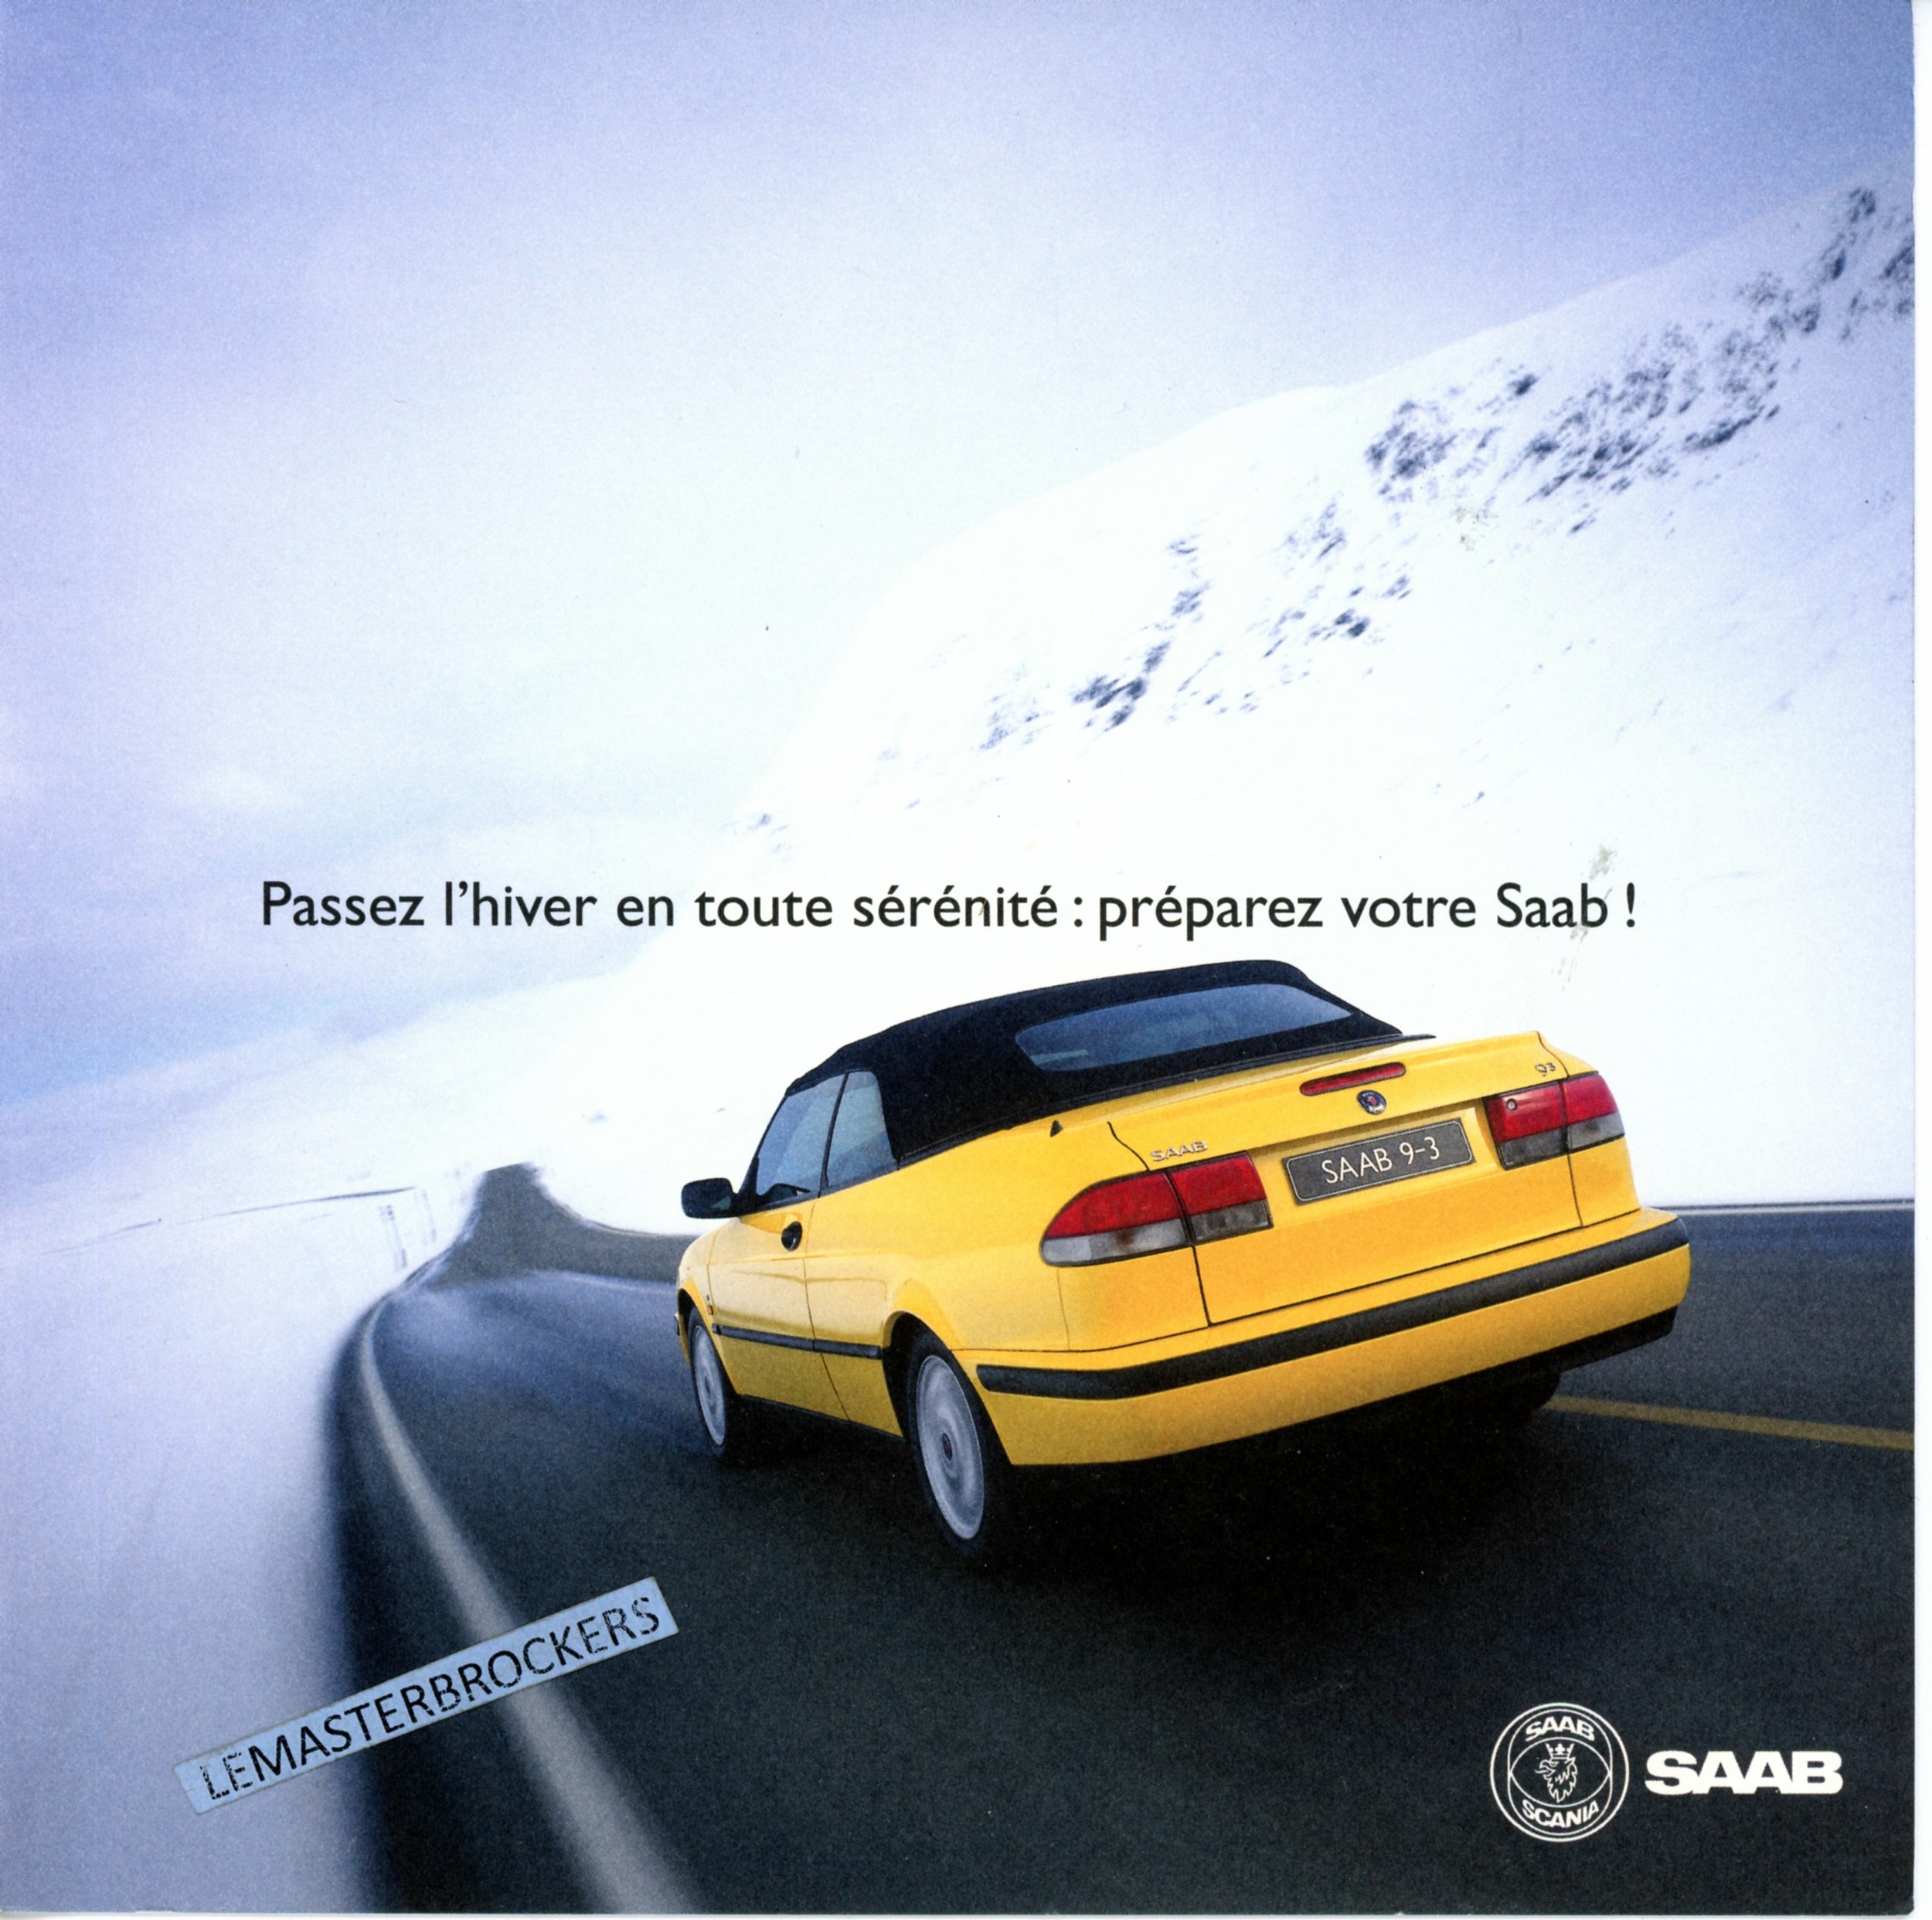 BROCHURE-AUTO-SAAB-1999-LEMASTERBROCKERS